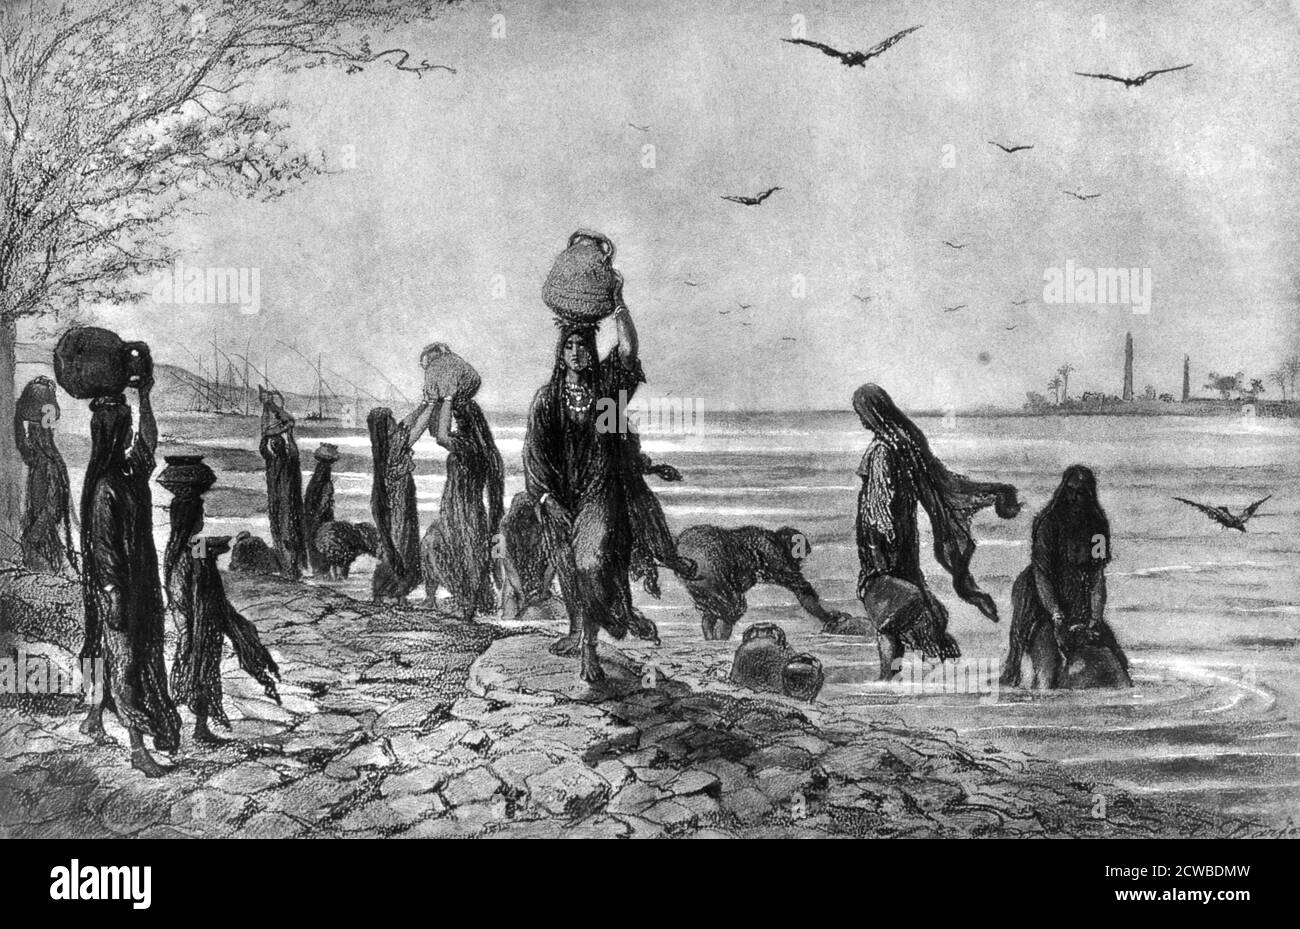 Donne fellah al bordo del Nilo ', 1872. Fellah è la parola araba per un operaio o un contadino. Una stampa del Cairo e dell'Alto Egitto. Dell'artista francese Alfred-Henri Darjou. Foto Stock